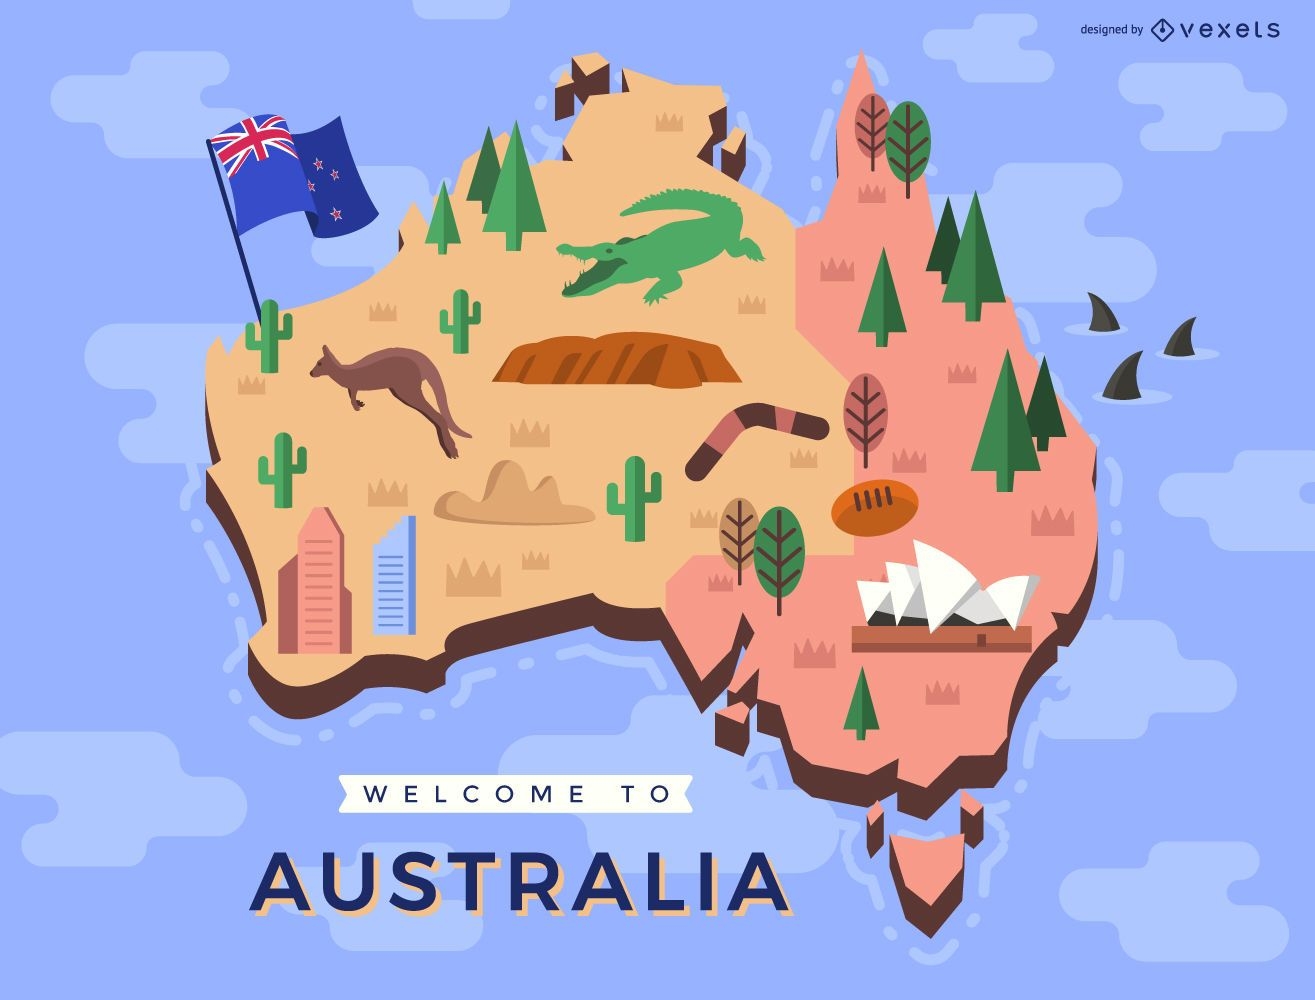 Mapa australiano com elementos tradicionais